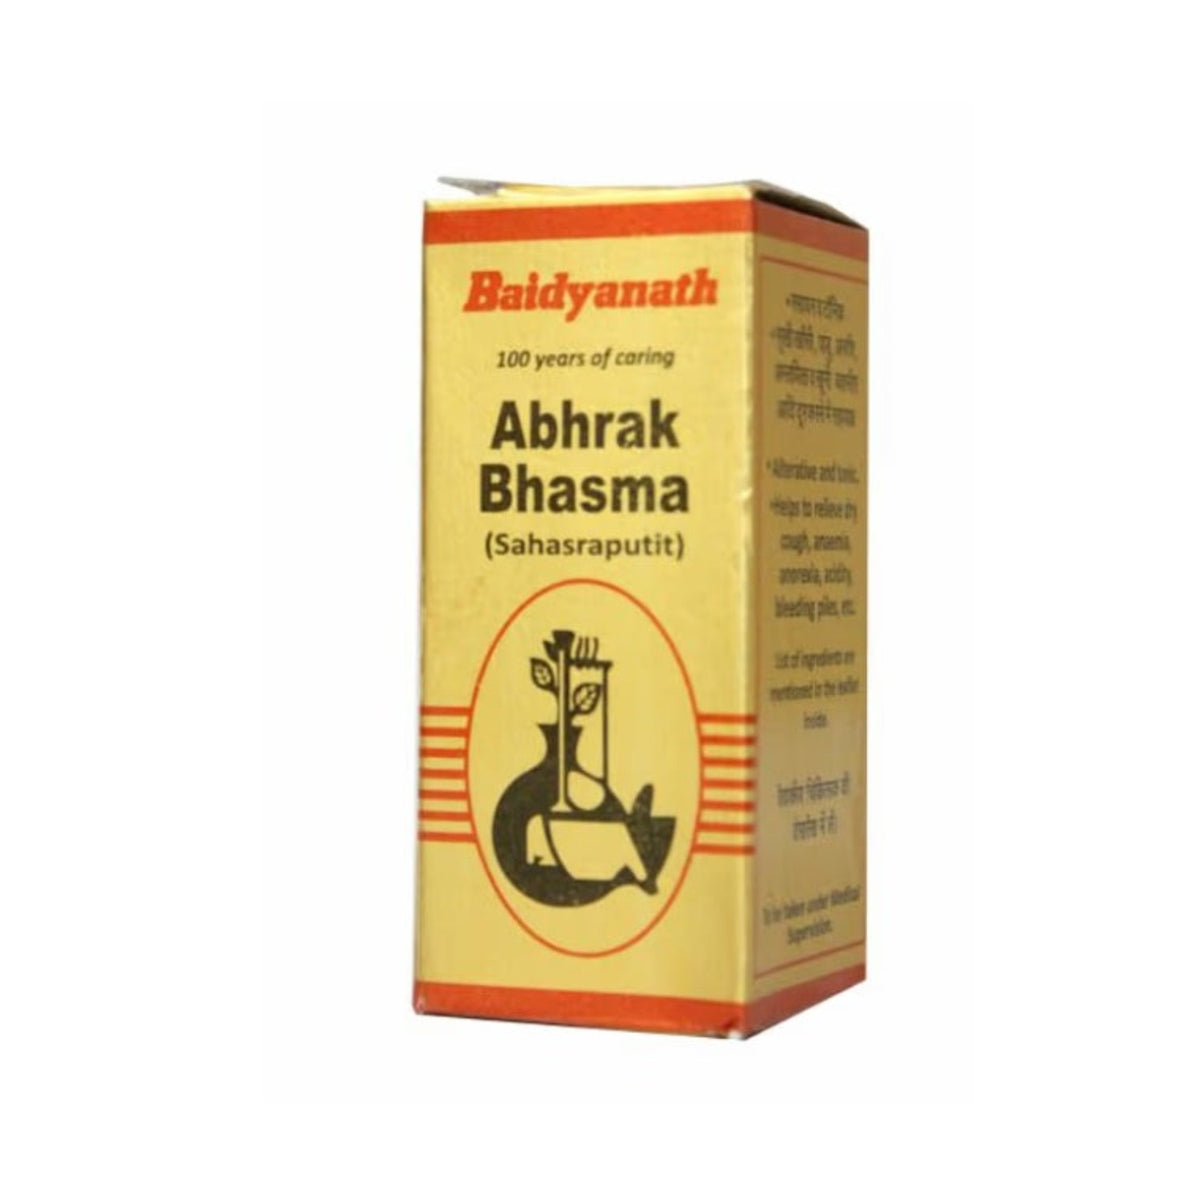 Baidyanath Ayurvedic Abhrak Bhasma (Sahasraputit) Powder